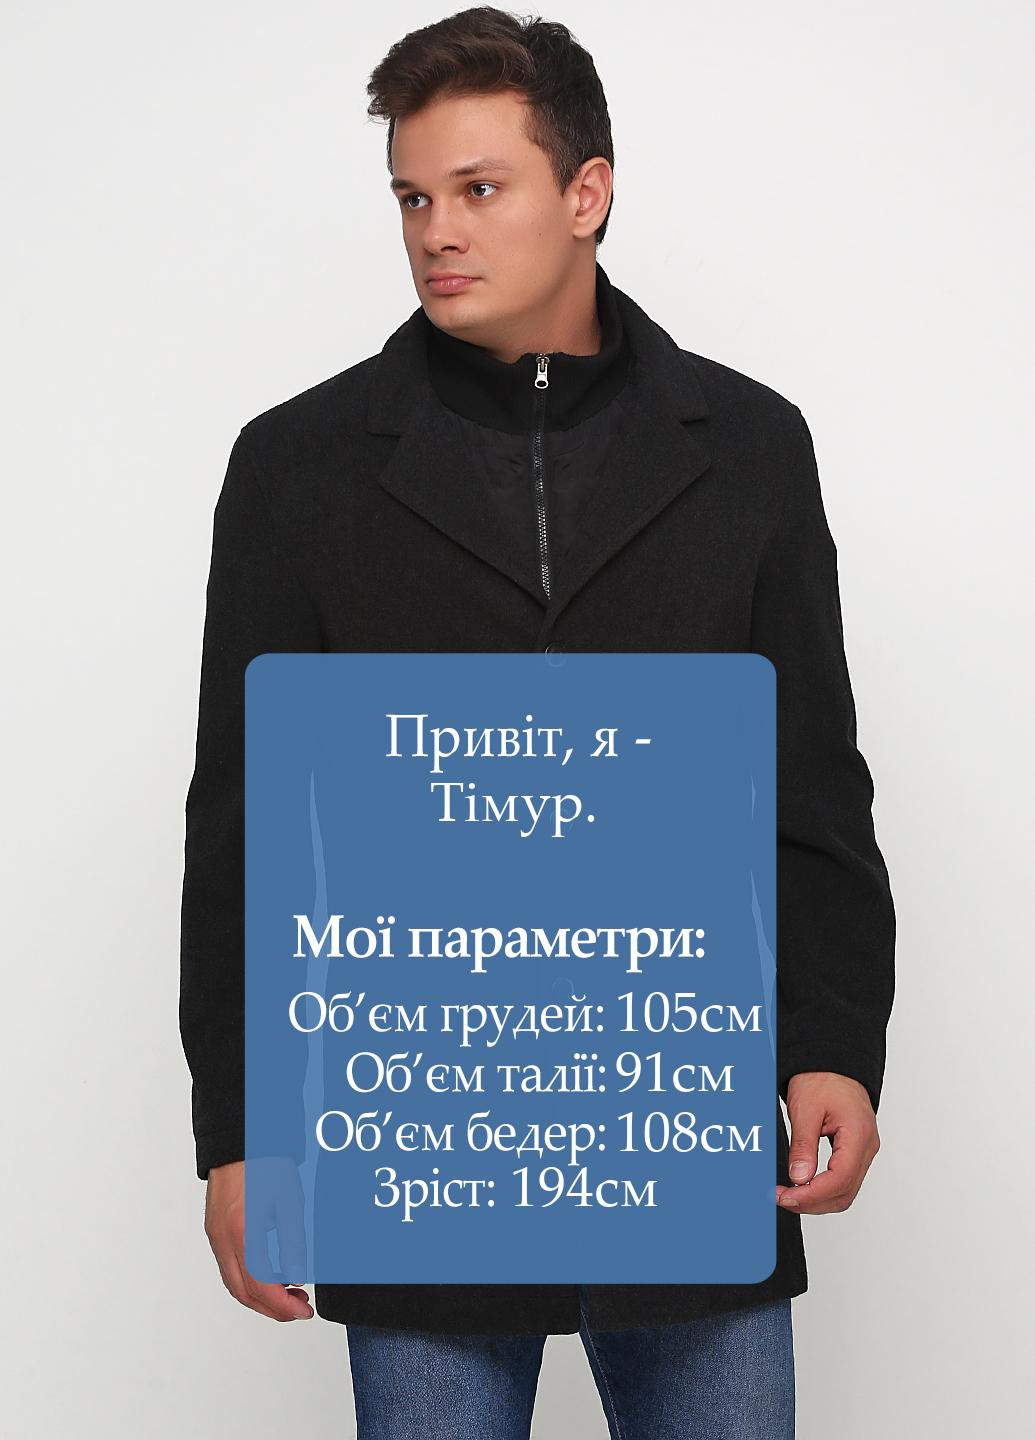 Черное демисезонное Пальто однобортное Yorn